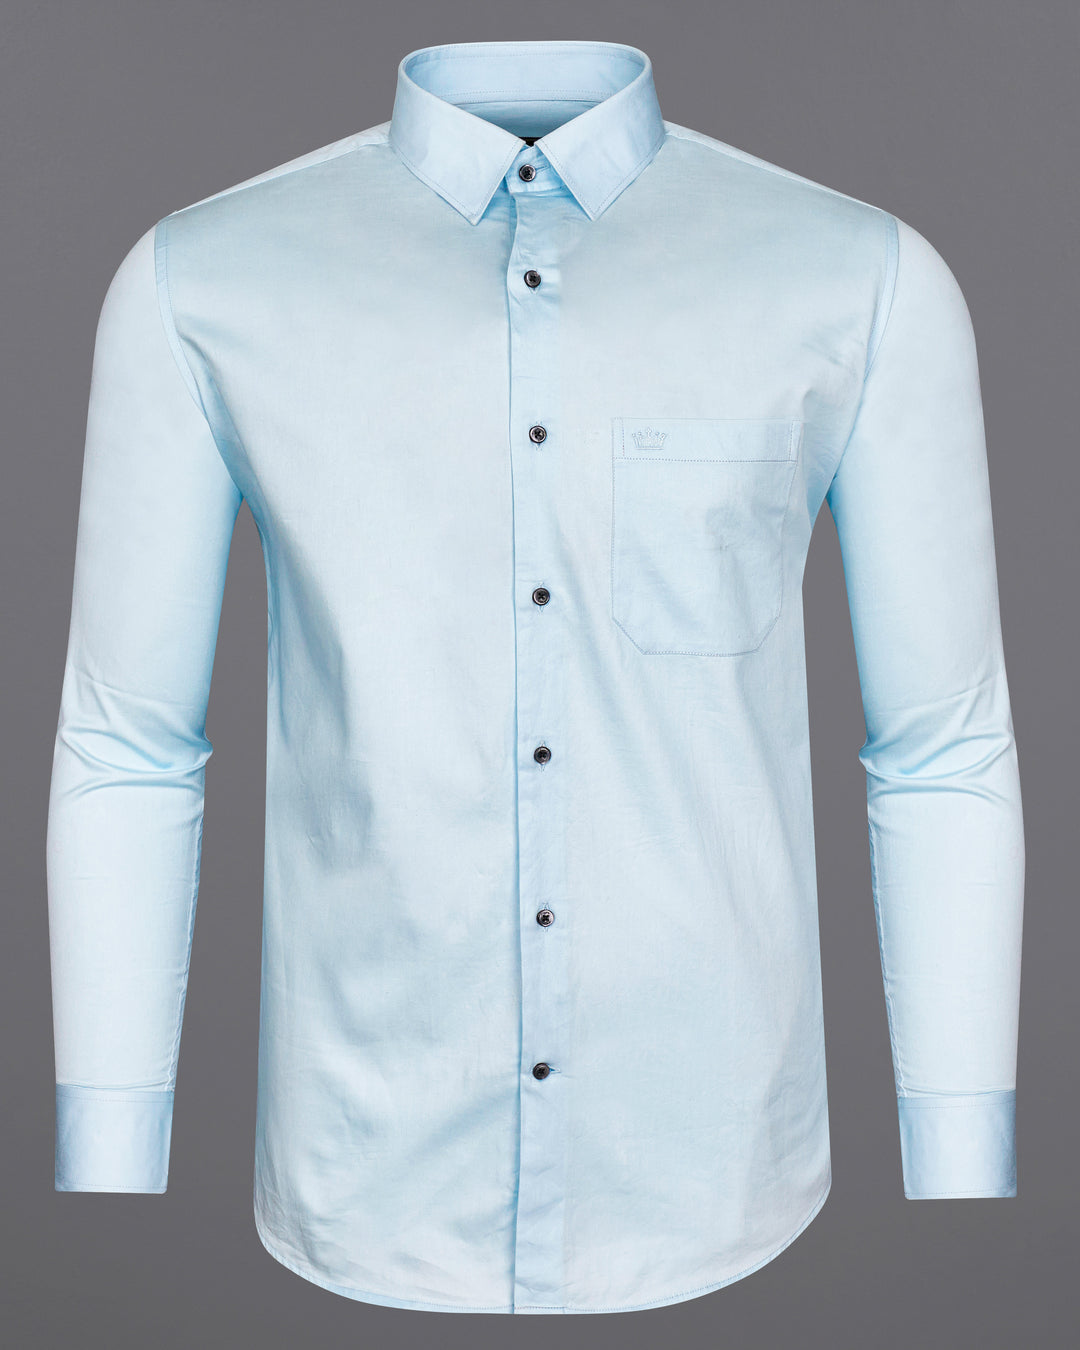 20 Blue Pant Combination Shirt For Men 